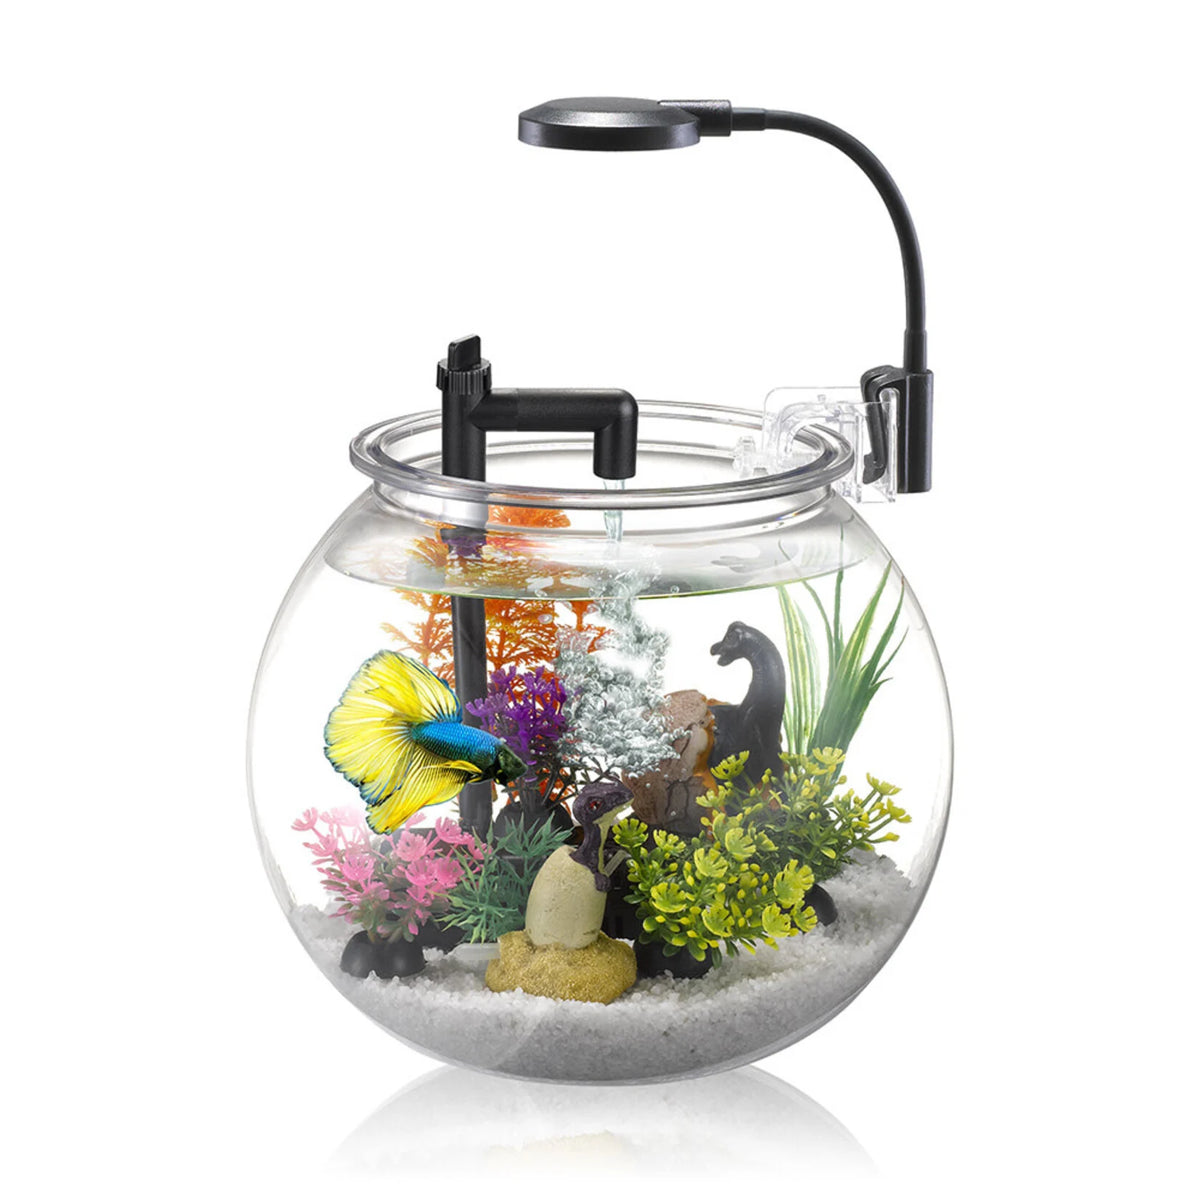 NUBIOS Aquarium pour betta 4L (1 Gallon)